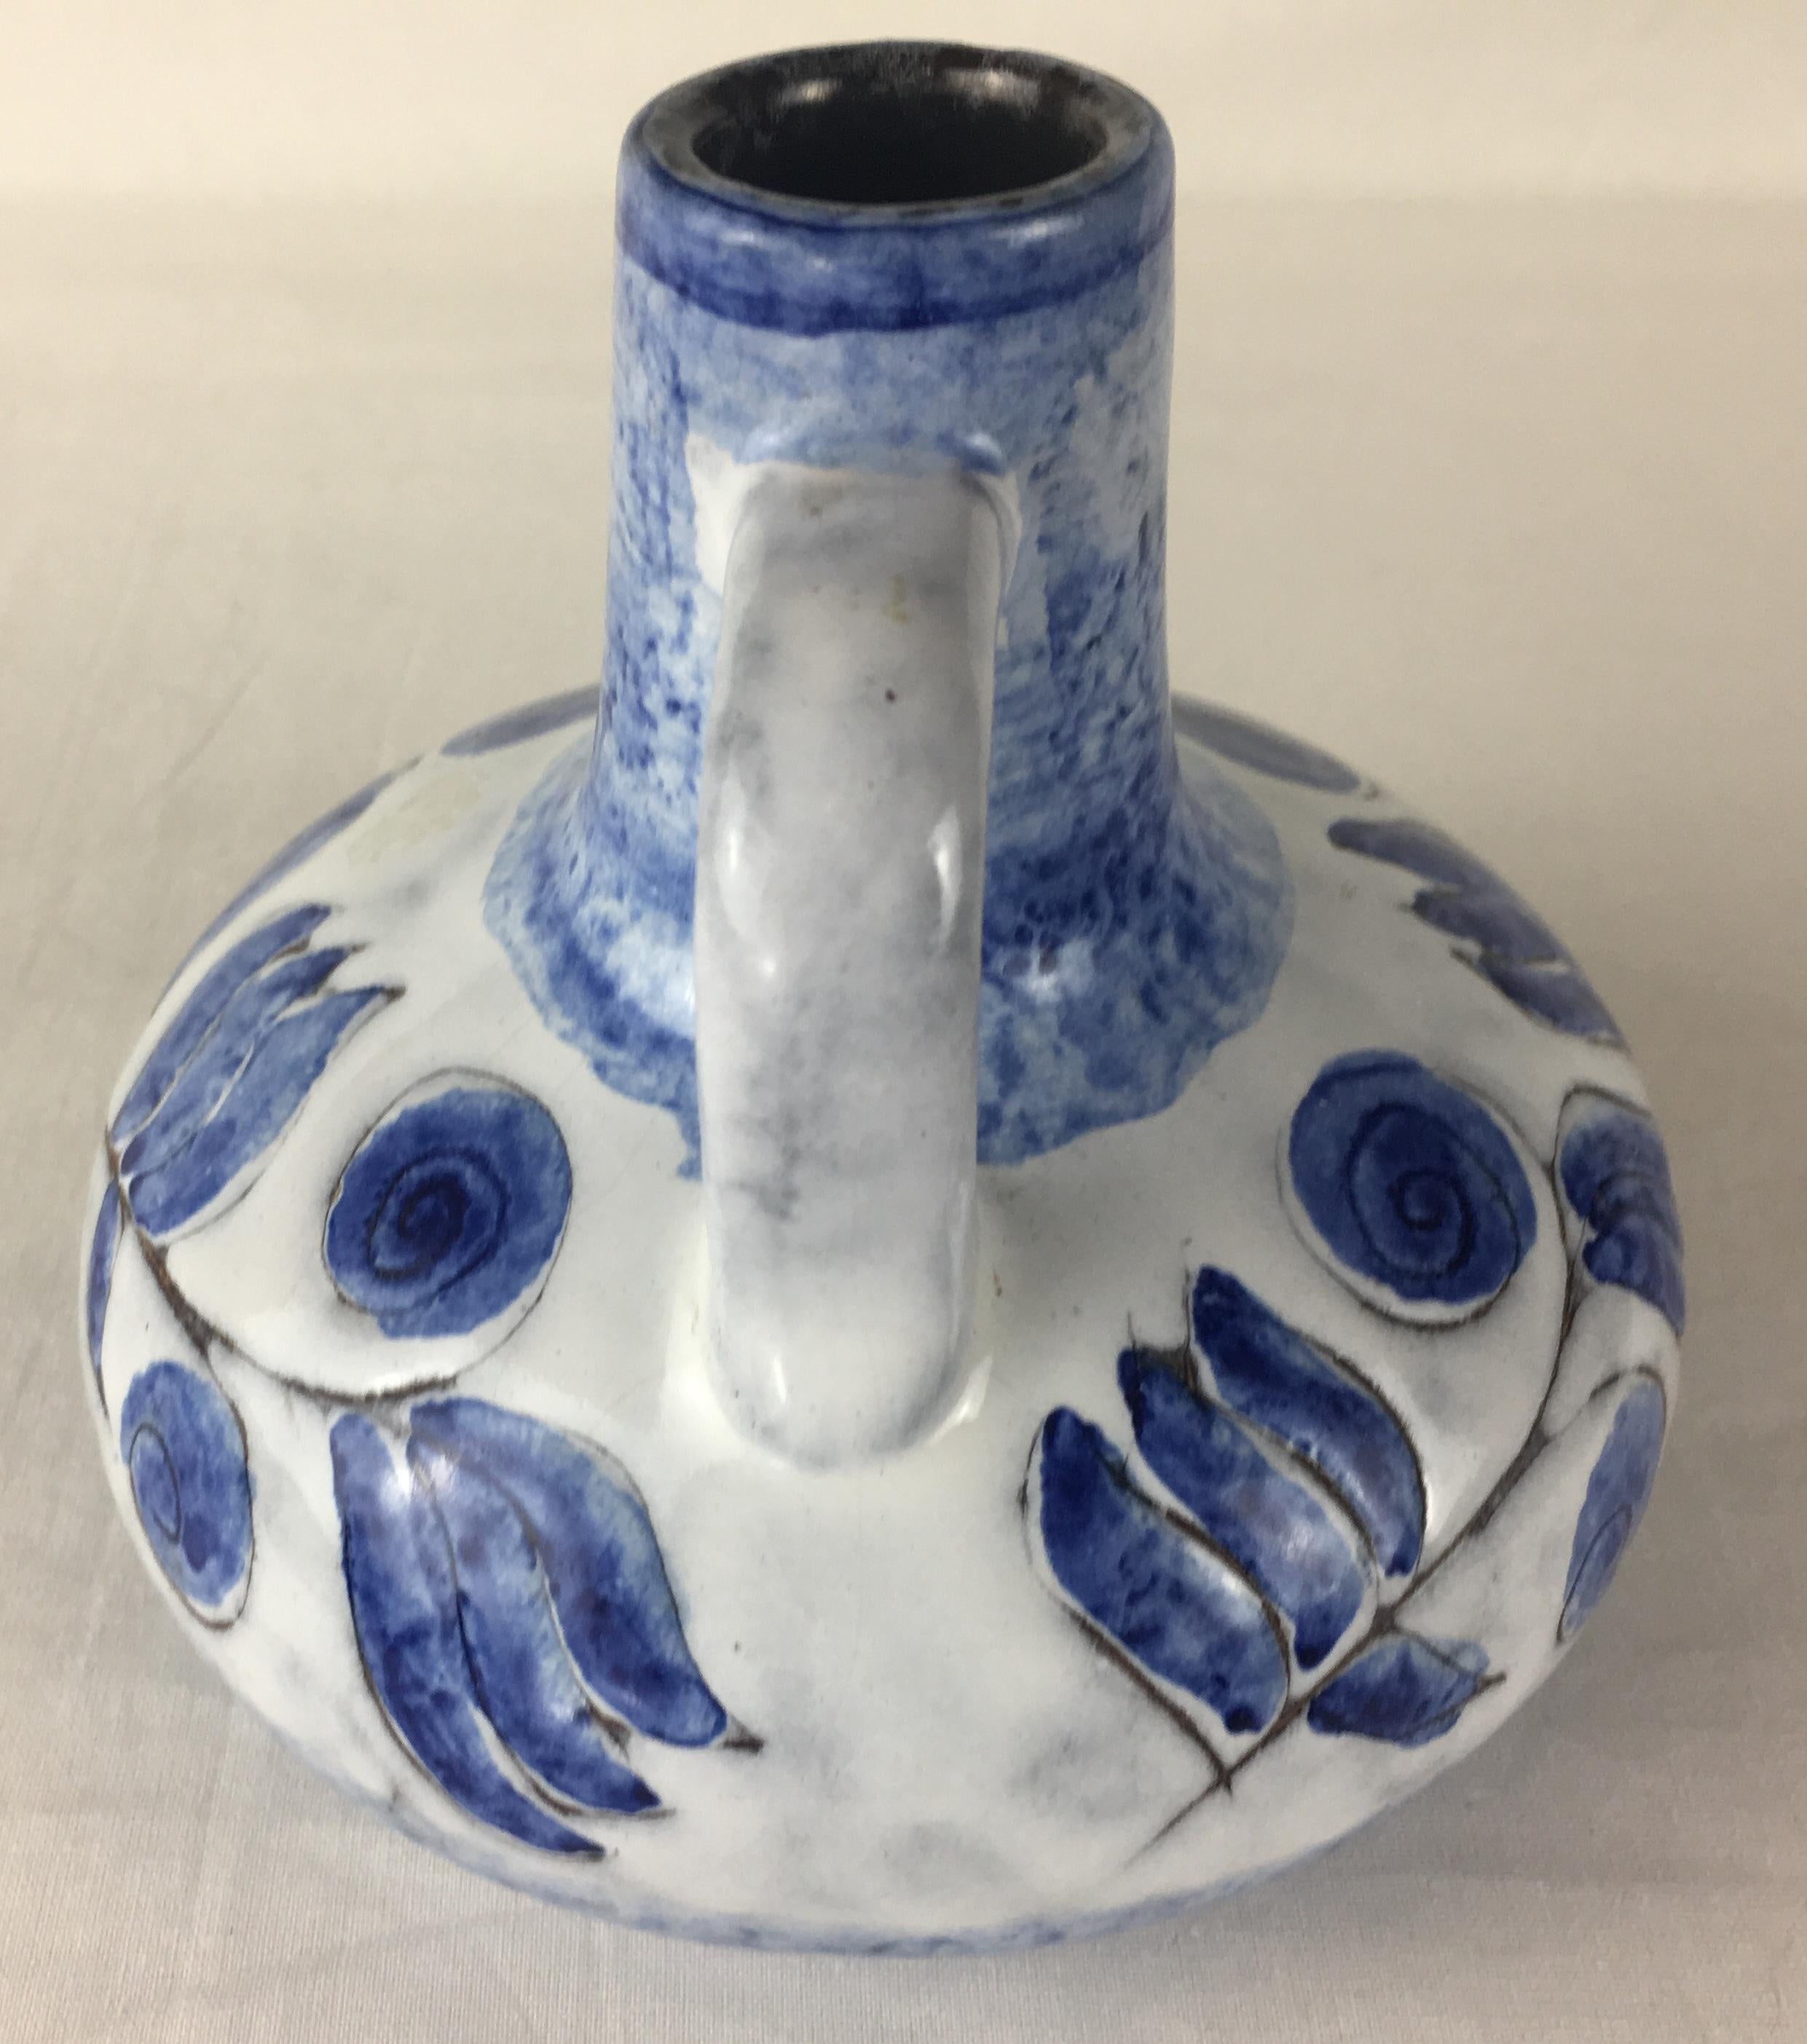 Vasija o jarra decorativa de cerámica francesa Studio Pottery Hecho a mano en venta